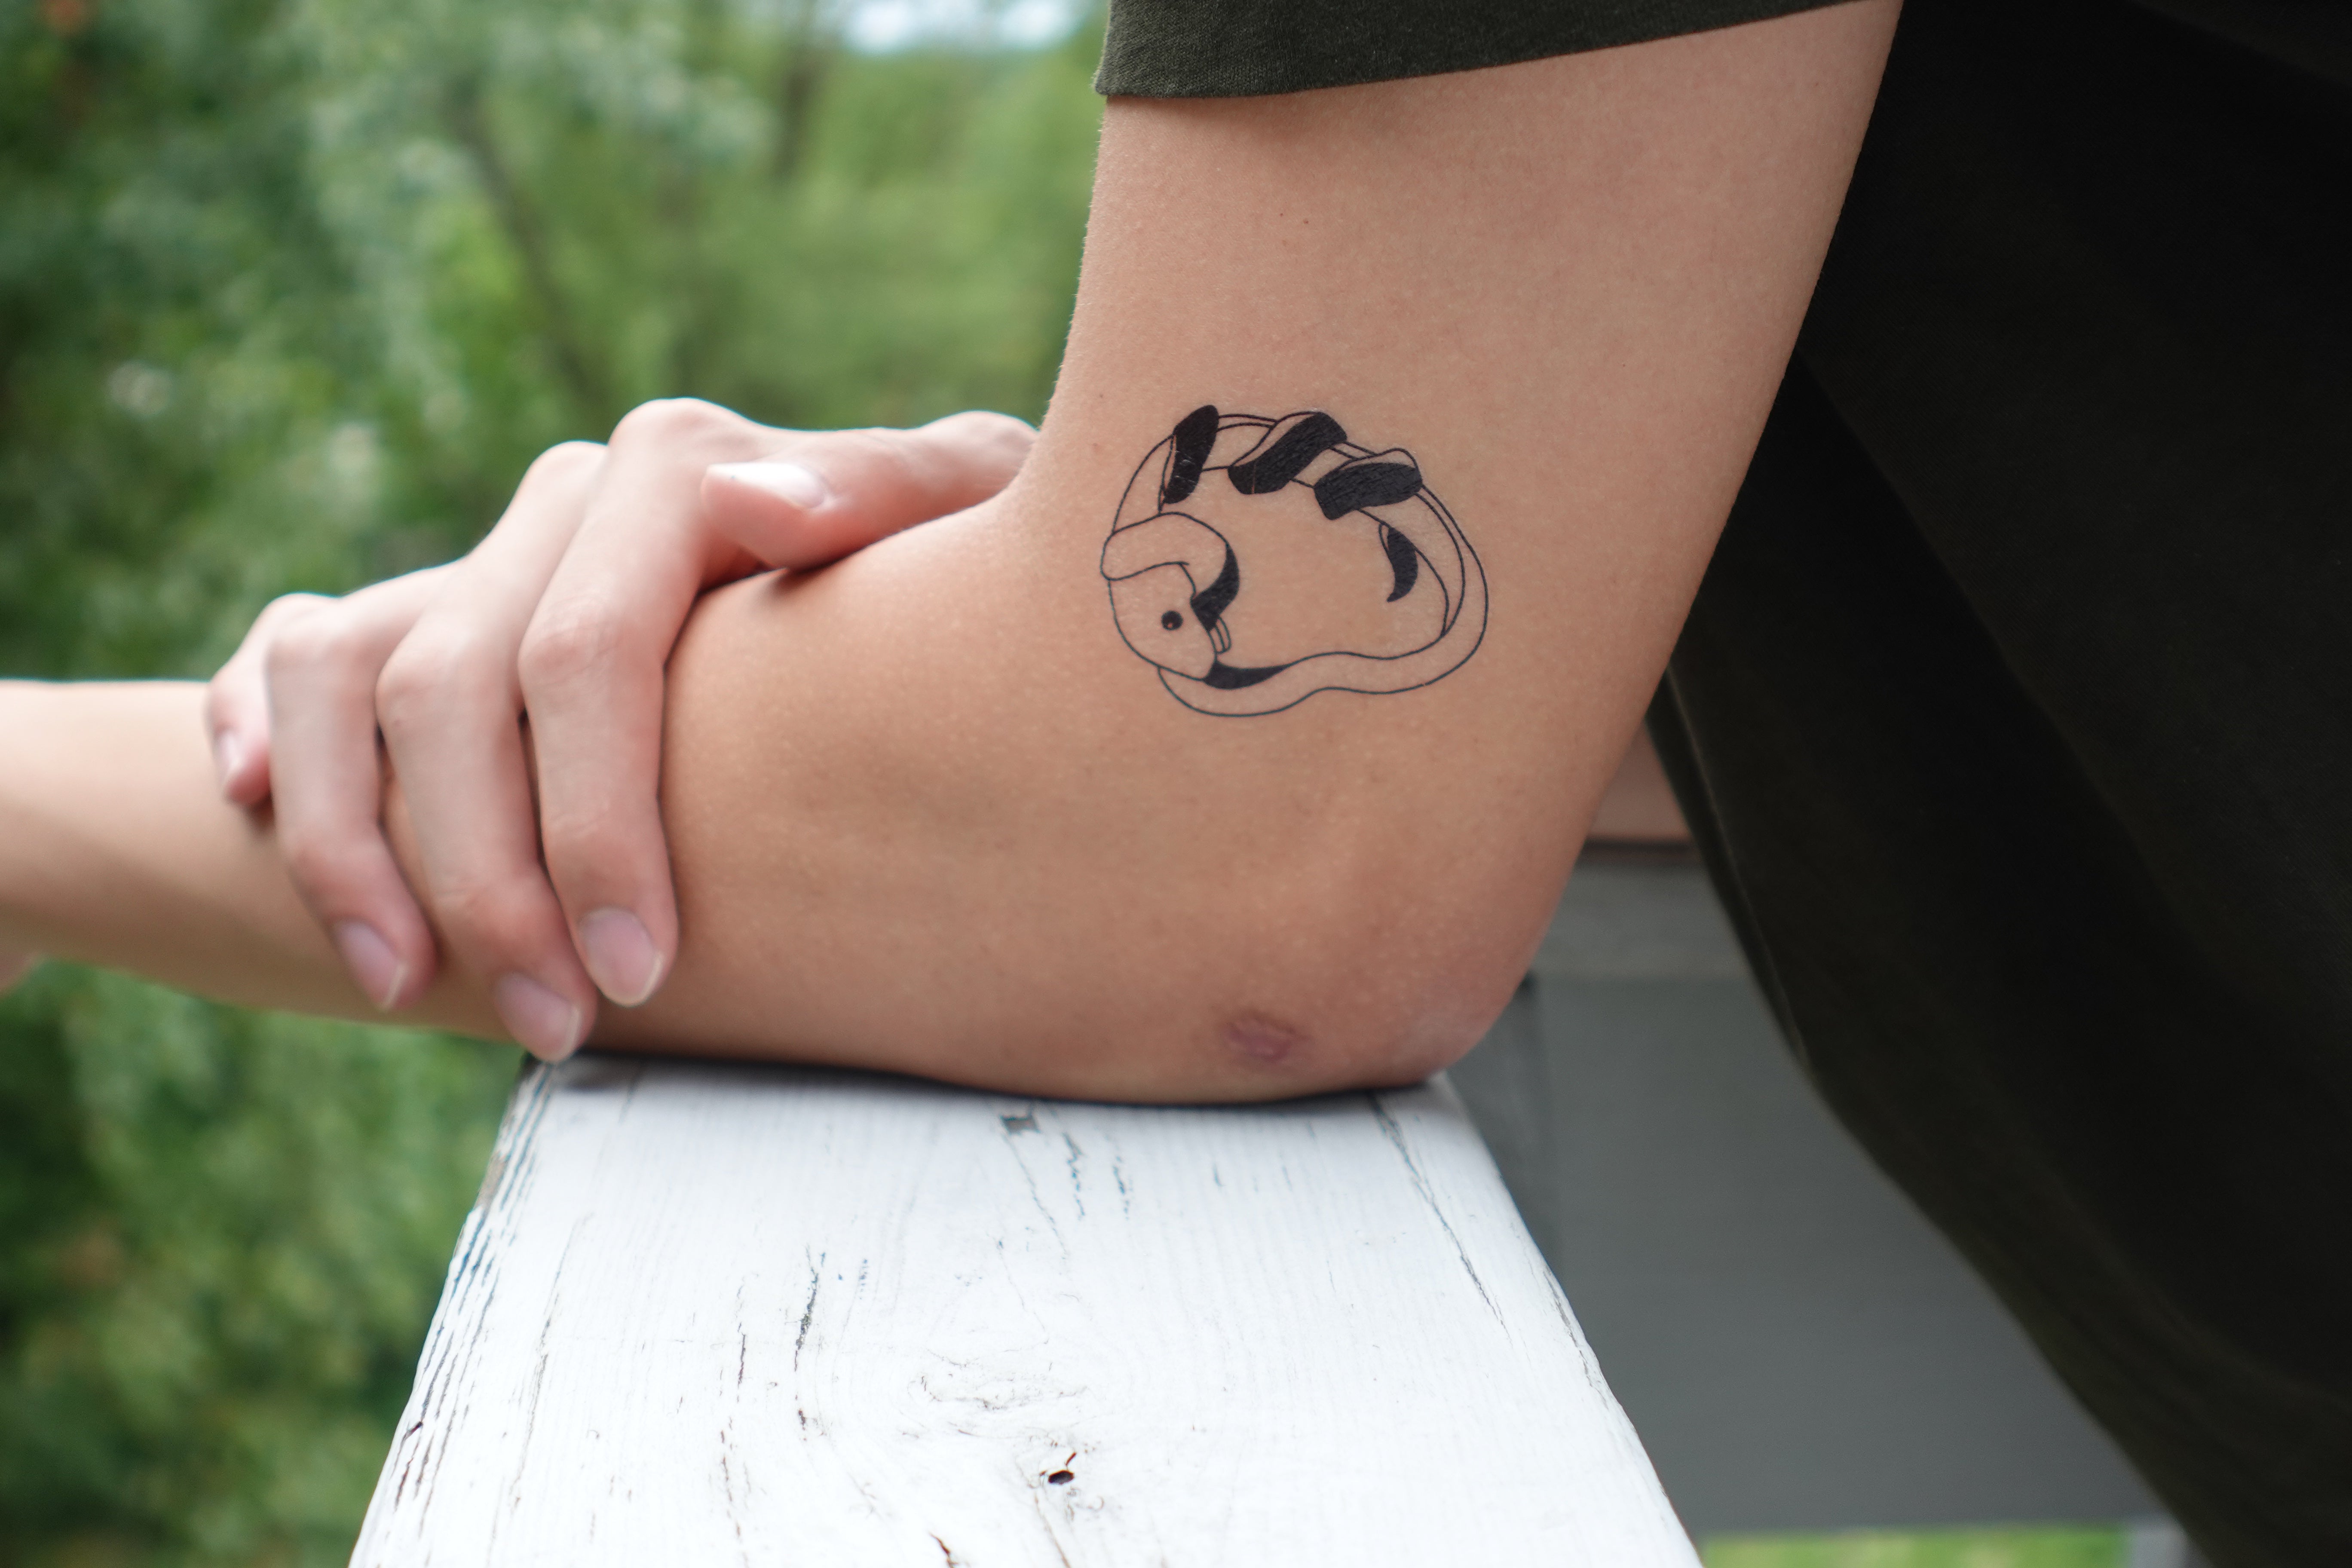 Sleepy panda by... - Black Sheep Ink Tattoo & Piercing | Facebook